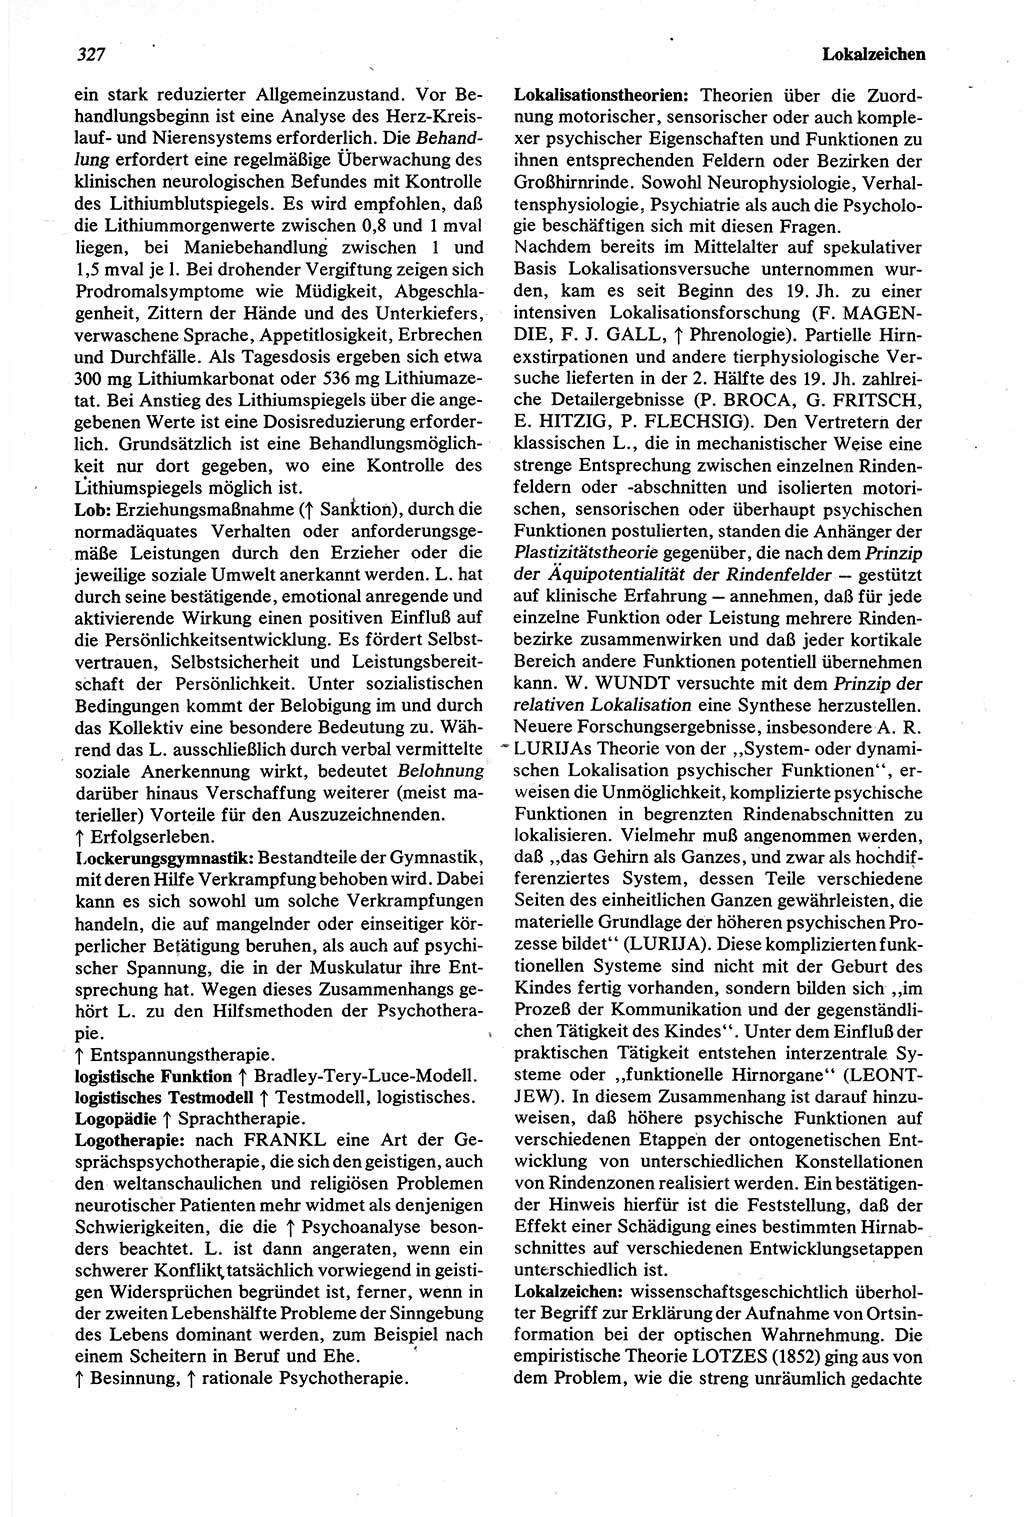 Wörterbuch der Psychologie [Deutsche Demokratische Republik (DDR)] 1976, Seite 327 (Wb. Psych. DDR 1976, S. 327)